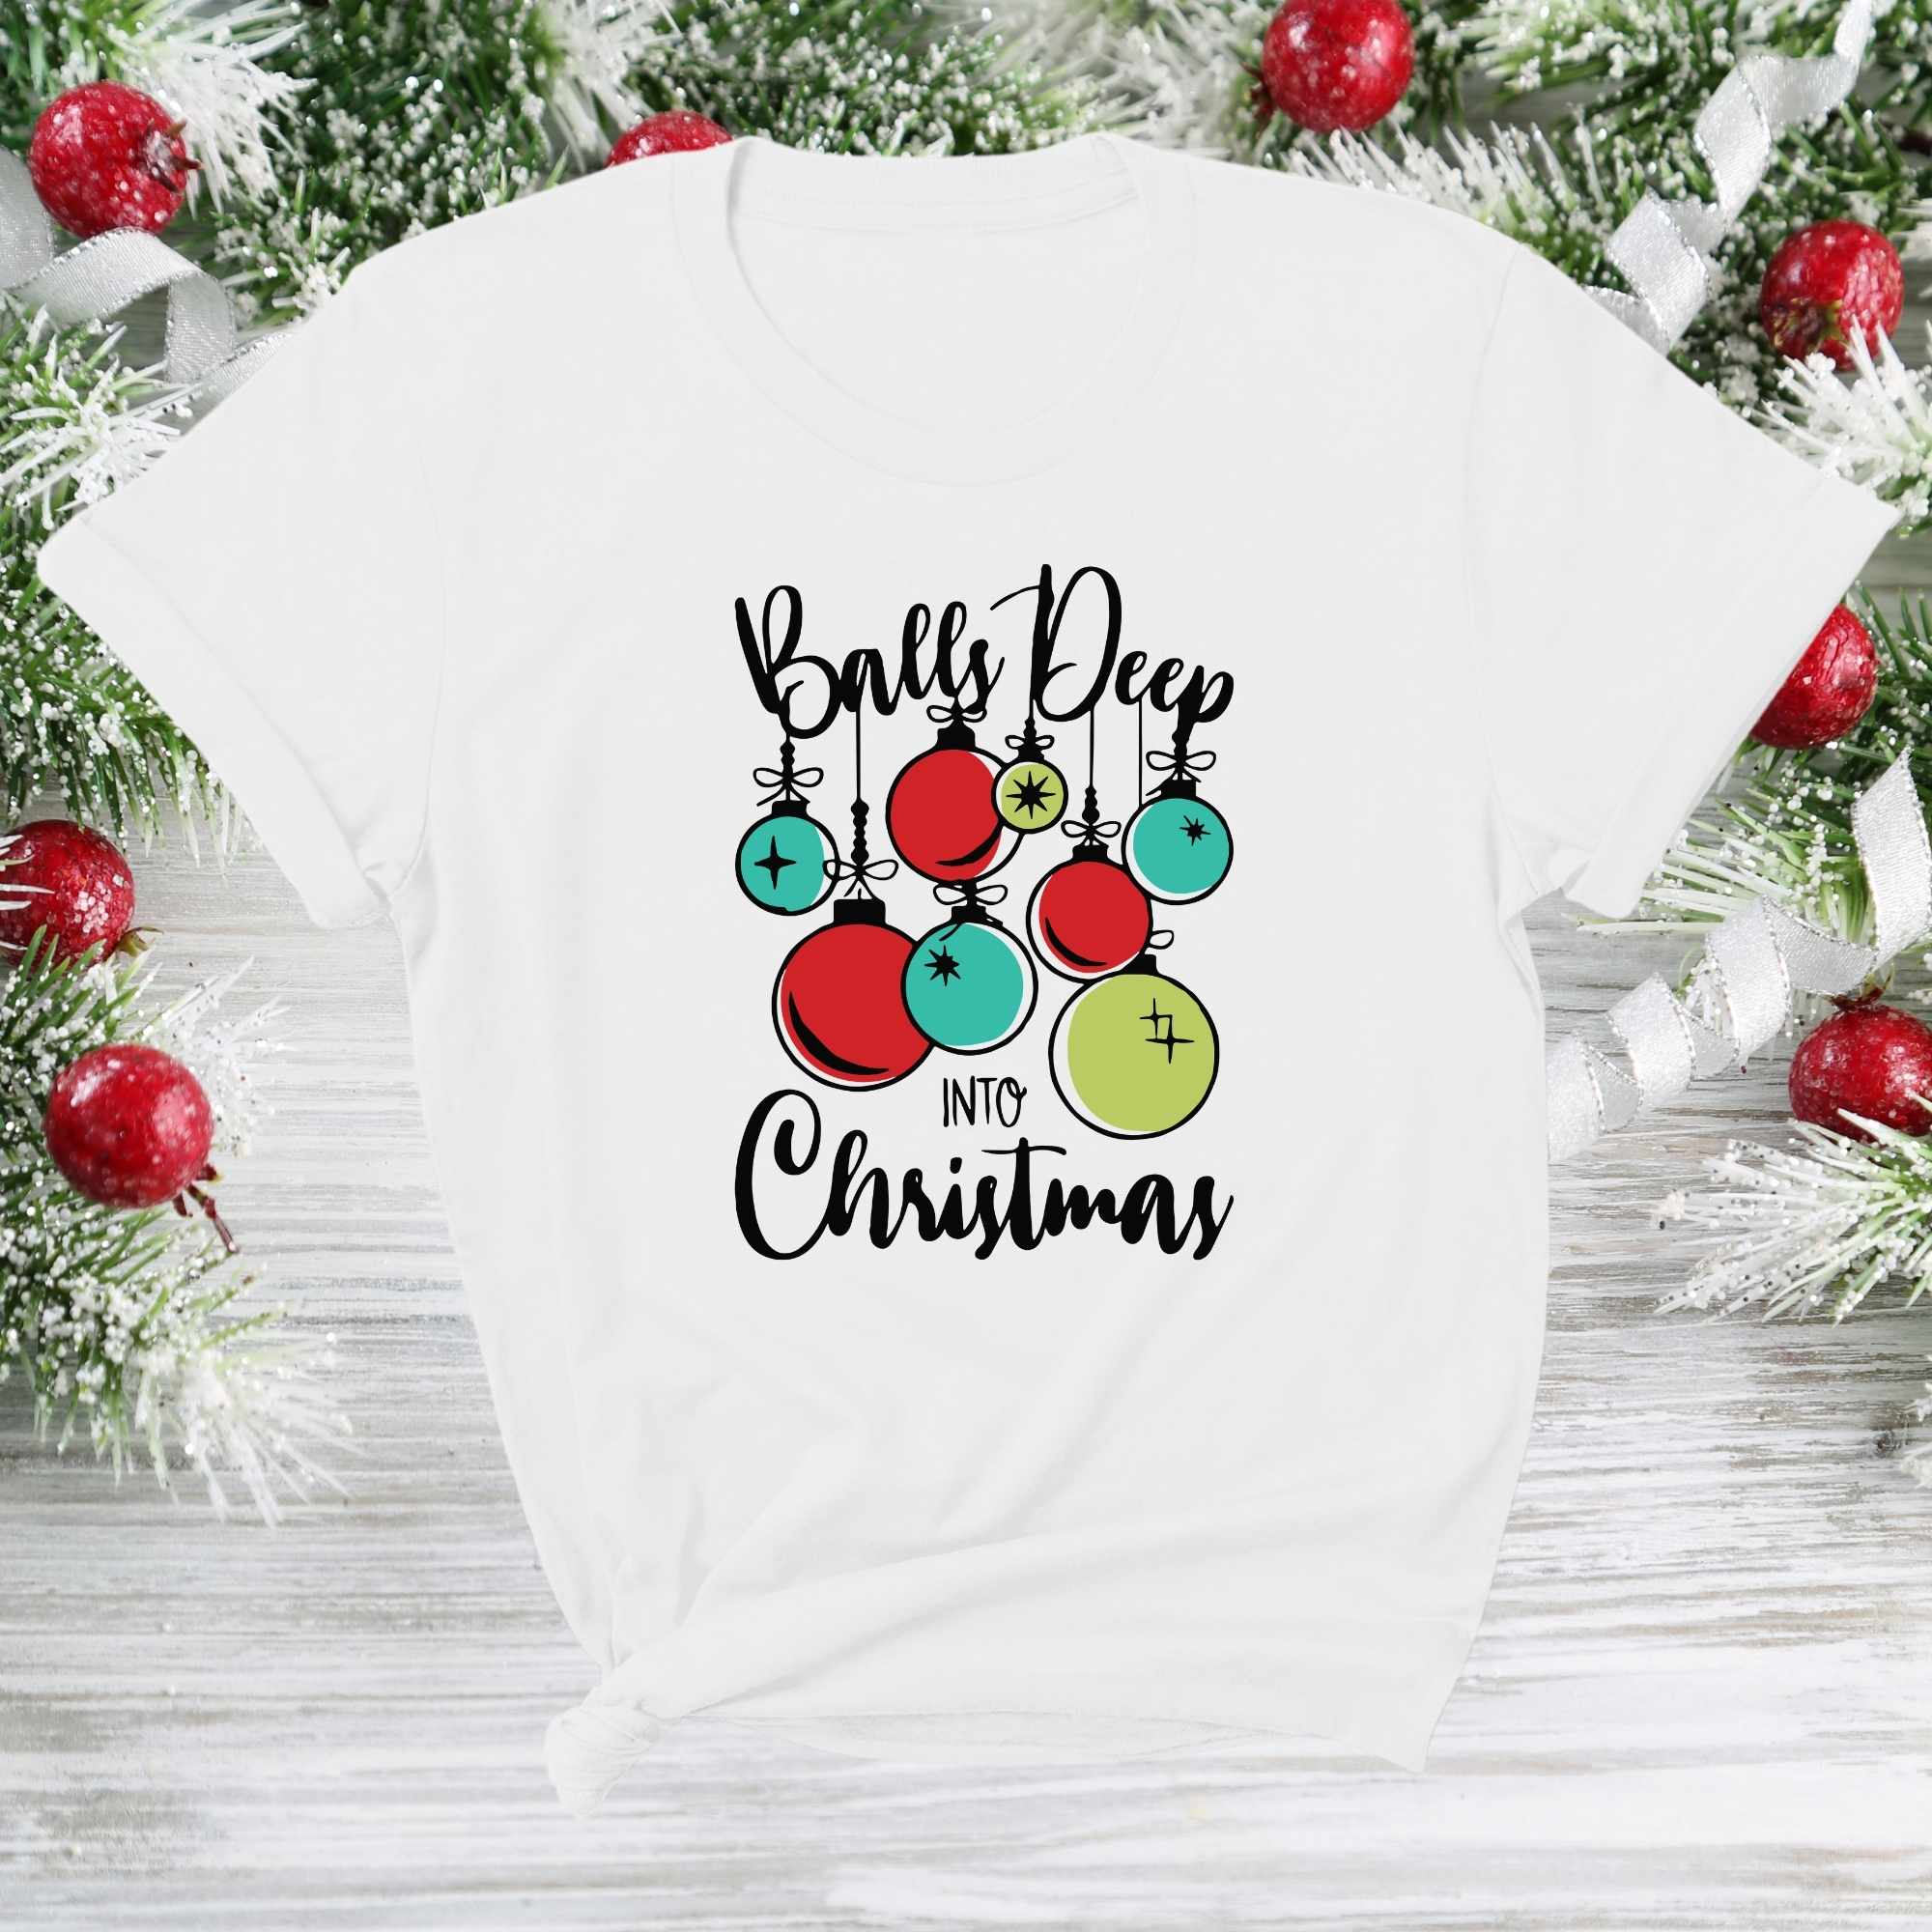 Balls deep into Christmas- T-shirt